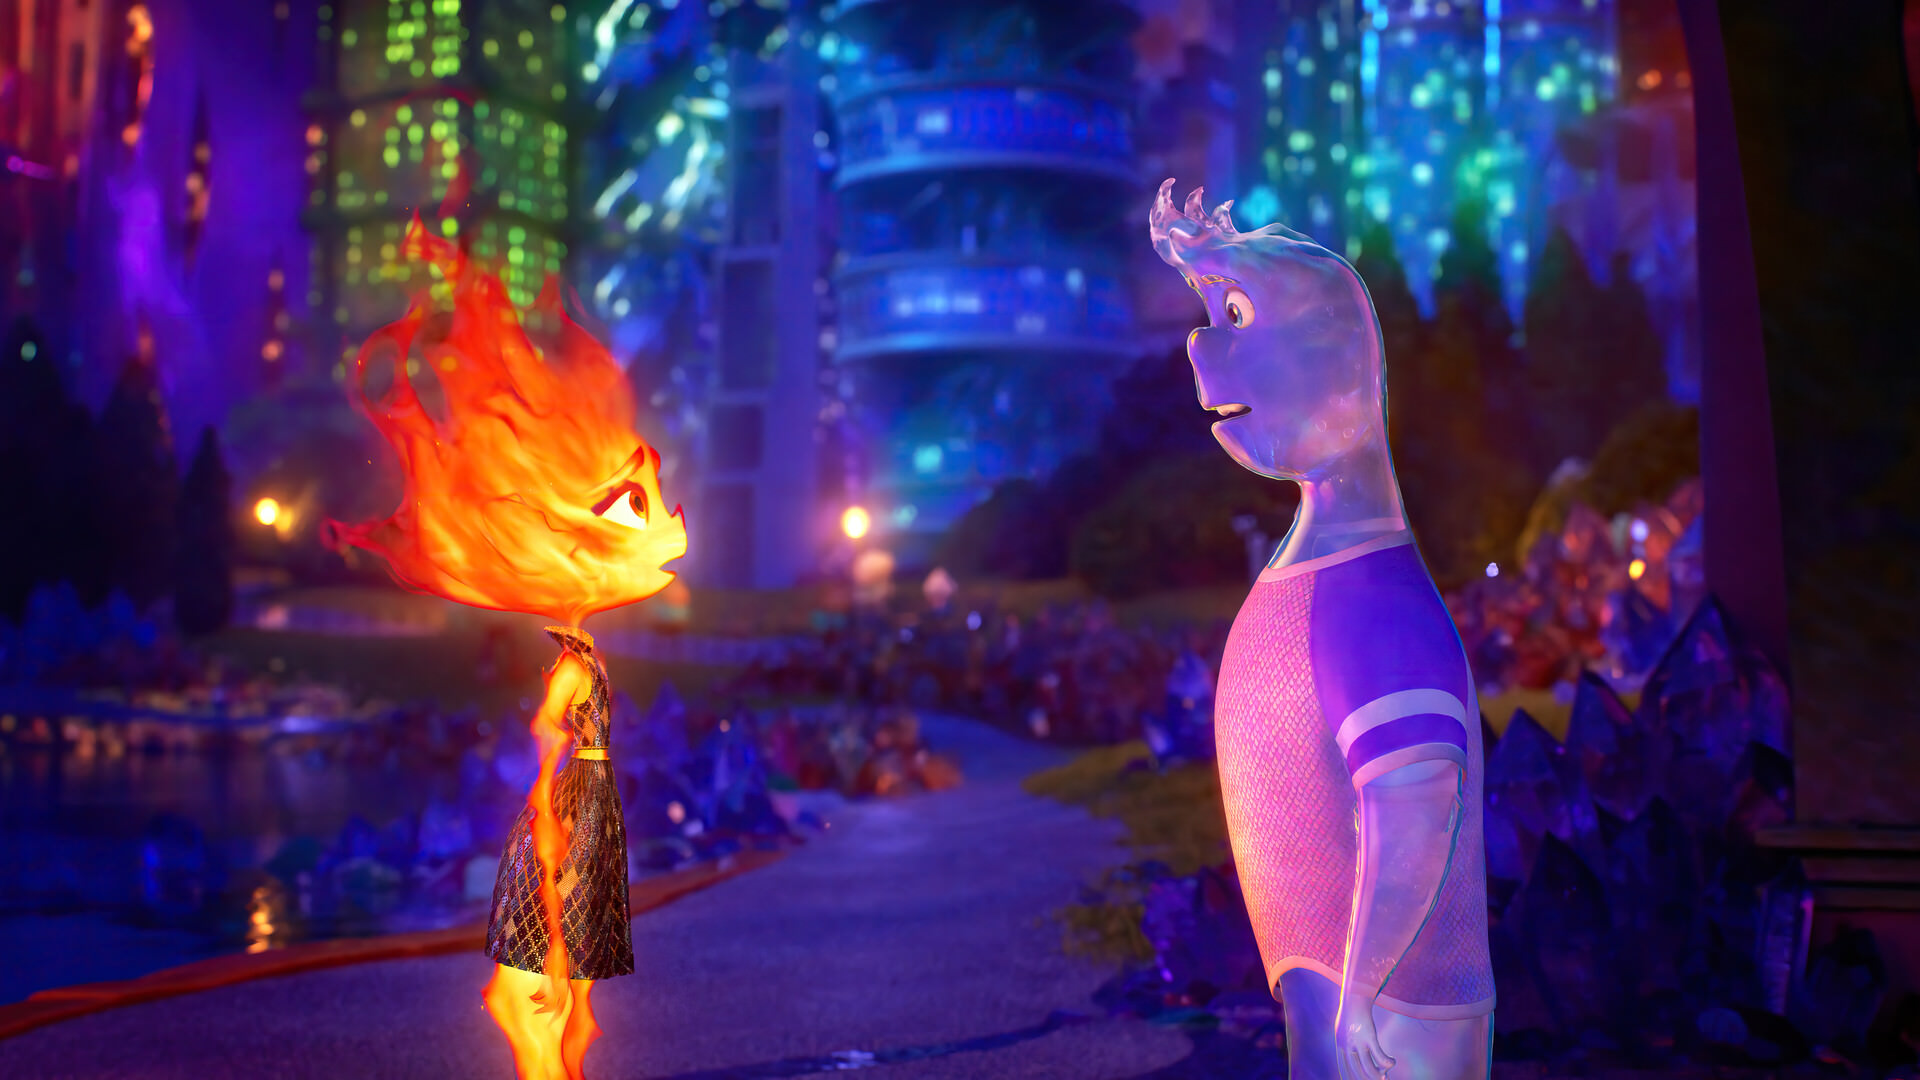 خلق رنگین کمان در اولین ویدیو انیمیشن Elemental پیکسار و دیزنی